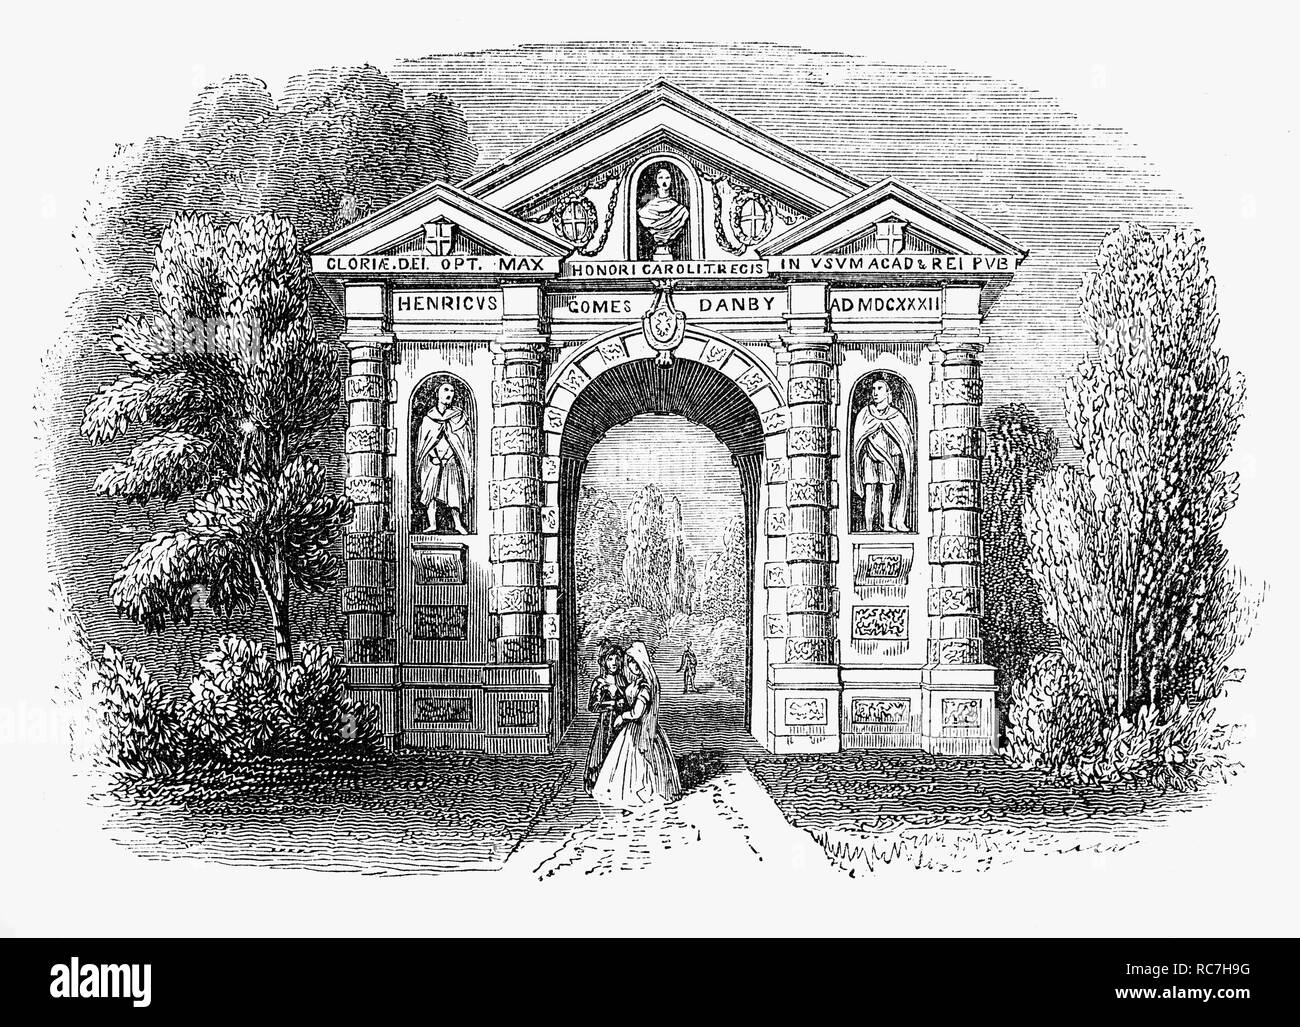 La passerelle Danby à l'Université d'Oxford Botanic Garden, le plus ancien jardin botanique en Grande-Bretagne et l'un des plus anciens jardins scientifiques dans le monde. C'est l'une des trois entrées conçu par Nicholas Stone entre 1632 et 1633. C'est l'un des premiers à utiliser des structures à Oxford, classique, style baroque. Dans l'arche en pierre ouvragée, très ignoré le nouveau style palladien classique simple en ce moment à la mode, qui vient d'être introduit en Angleterre de l'Italie par Inigo Jones. Le jardin a été fondée en 1621 en tant que commandos la culture de plantes médicinales pour la recherche. Banque D'Images